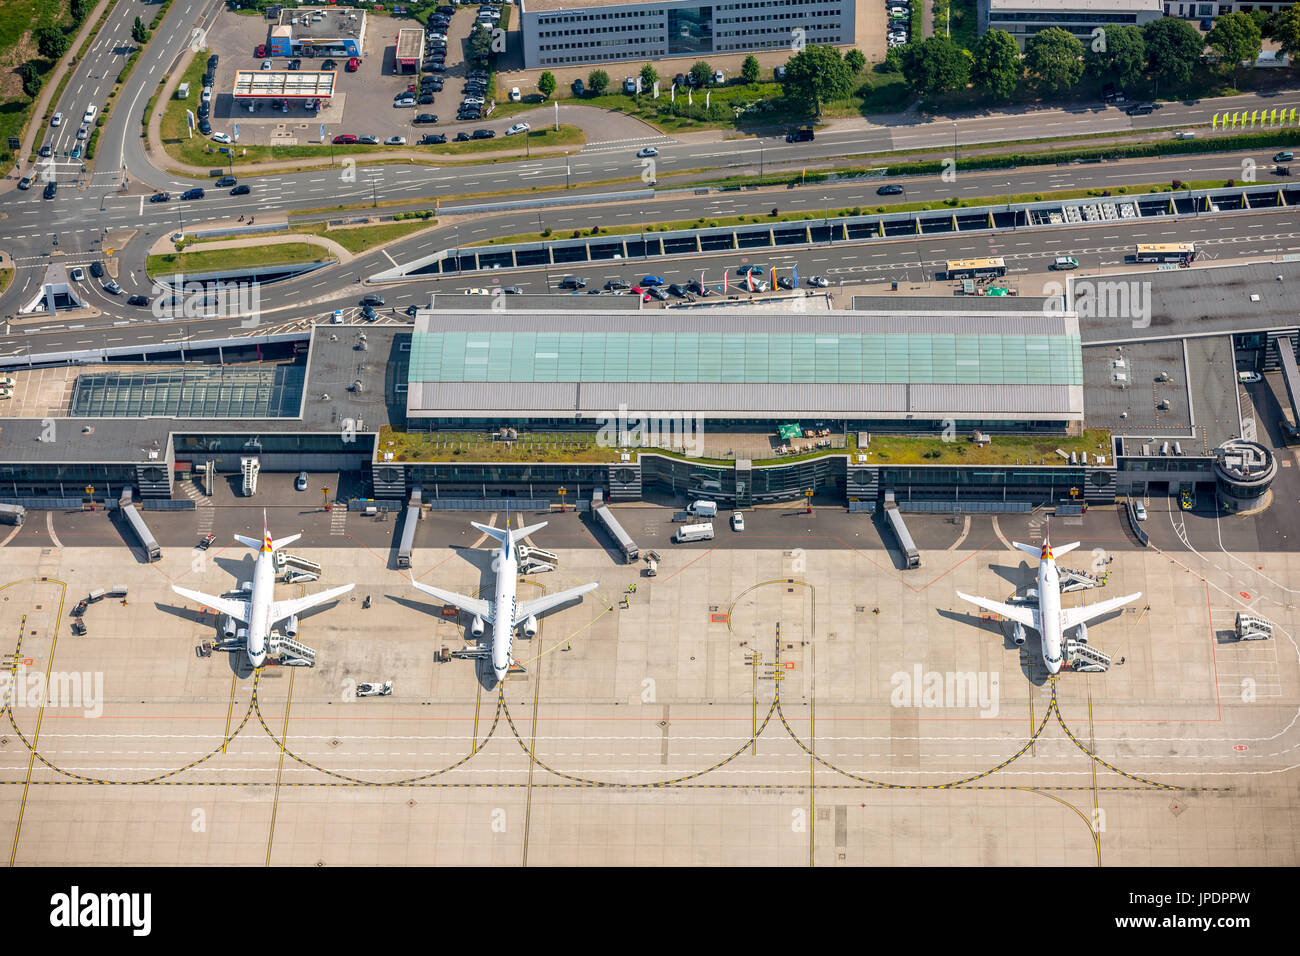 Aeropuerto Regional Dortmund-Wickede, delantal con un avión de pasajeros, Terminal 1, terminal de vuelos, fotografía aérea, Dortmund, área de Ruhr Foto de stock